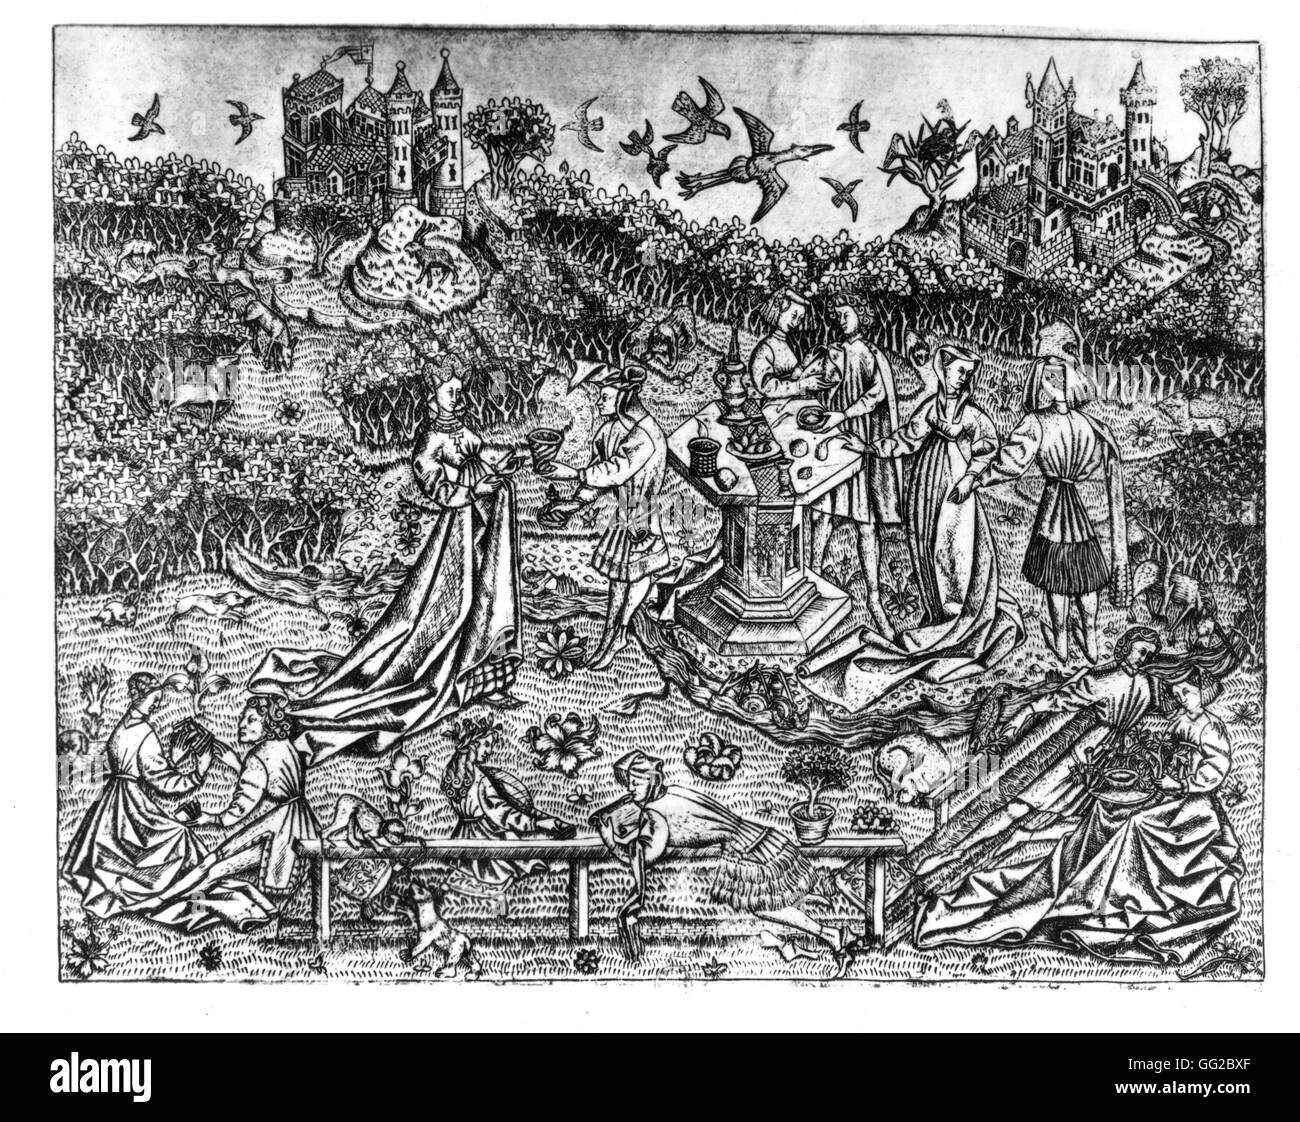 Incisione anonima, il giardino di amore del XV secolo in Francia Parigi - B.N. Foto Stock